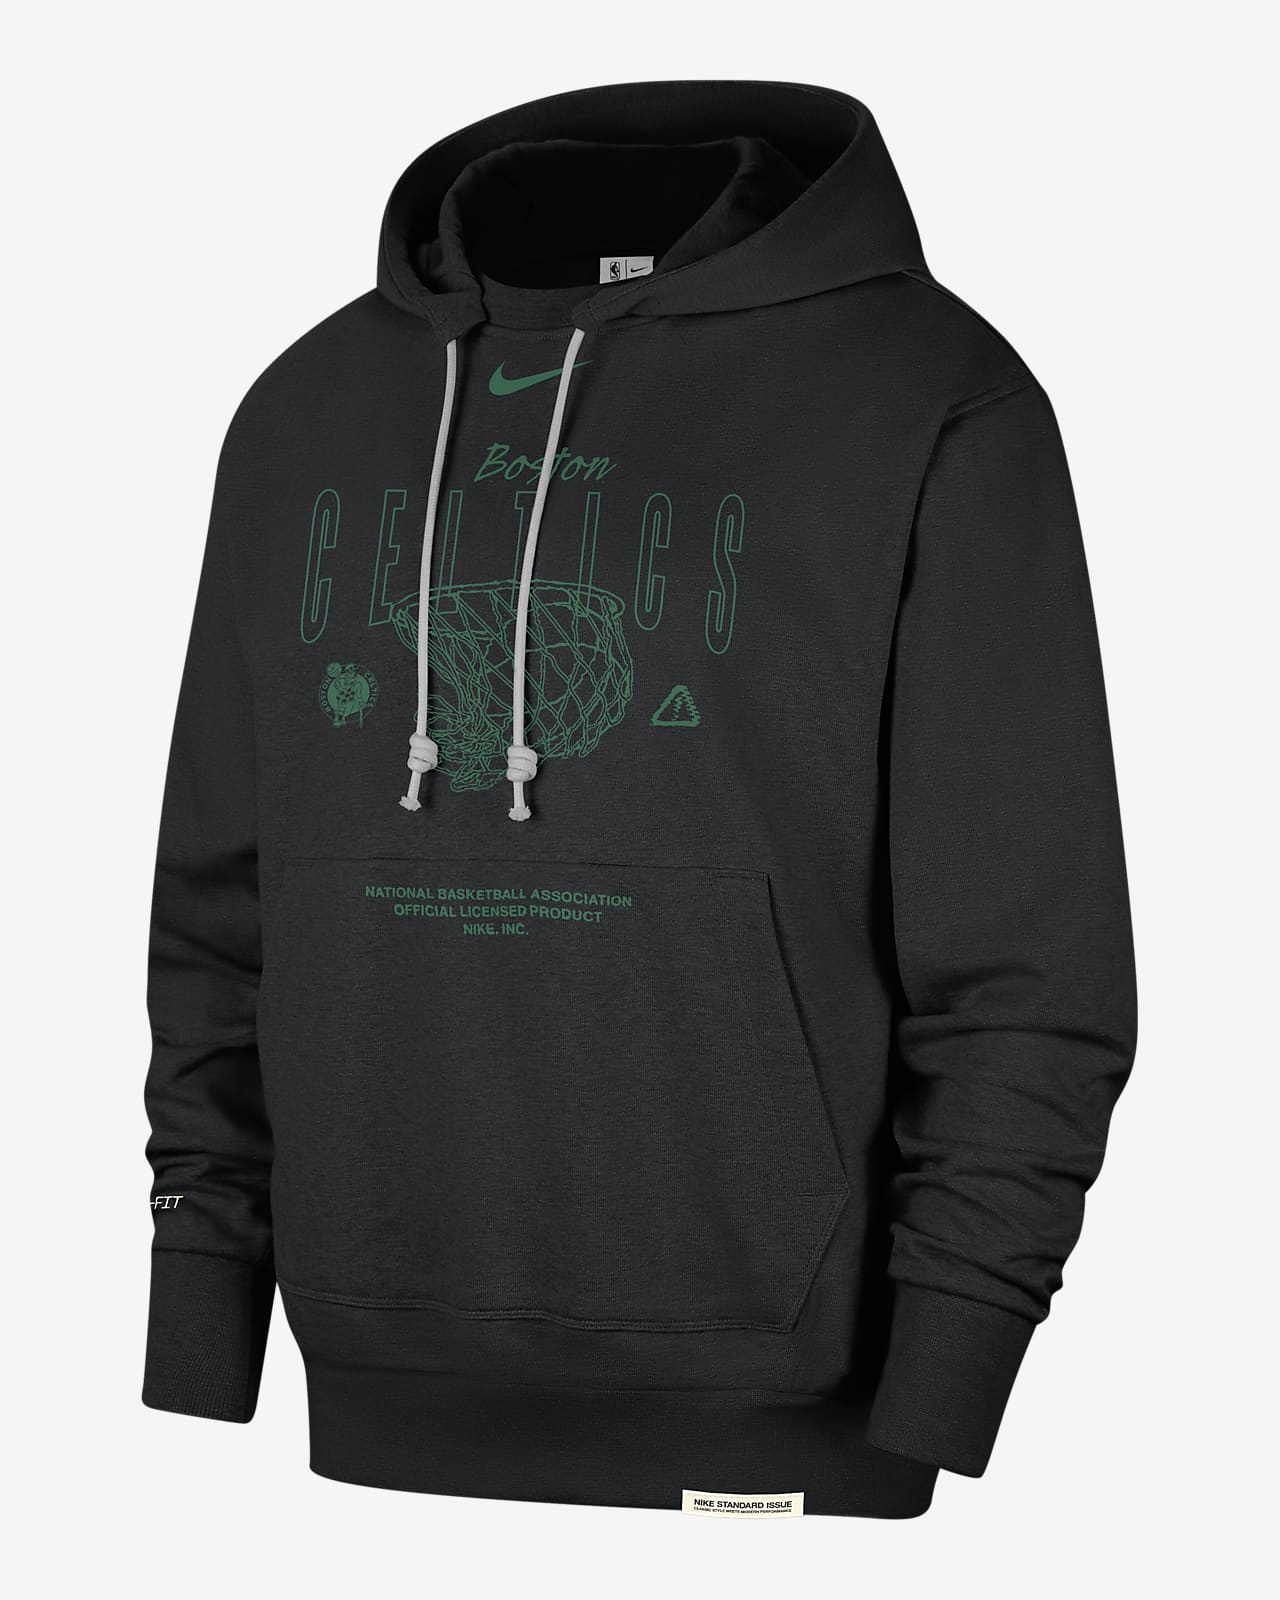 celtics fleece hoodie